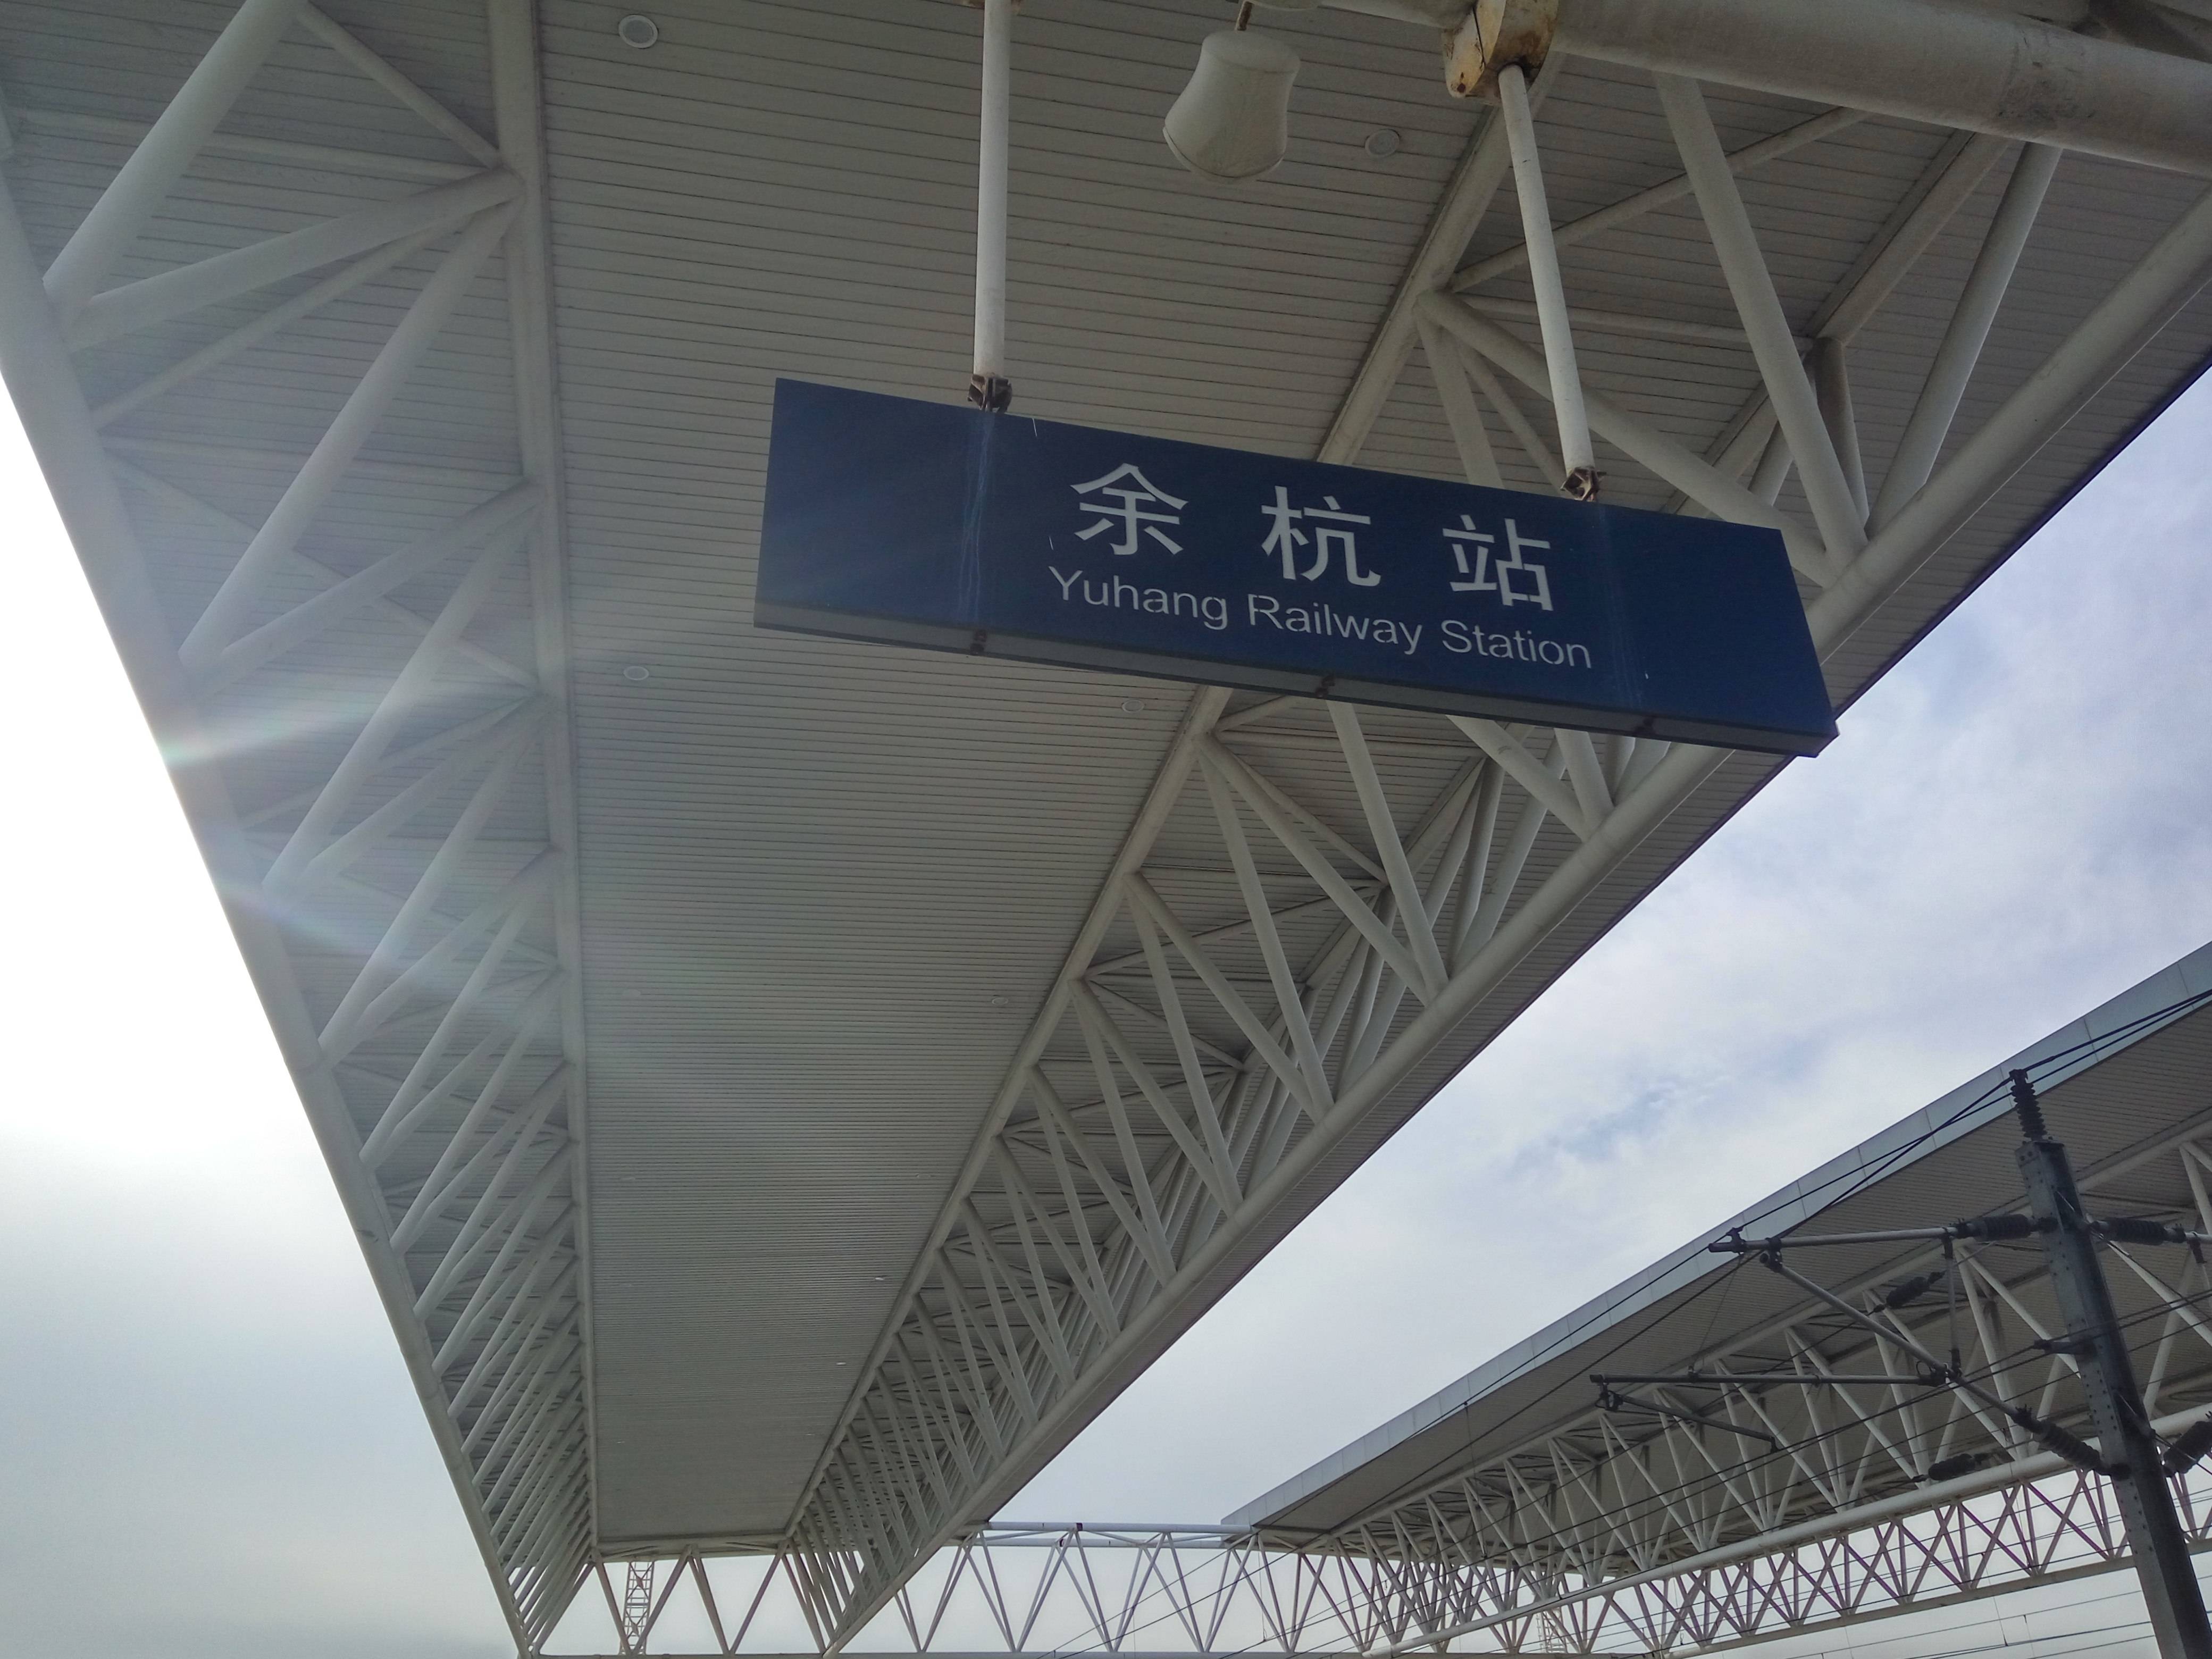 临平区内有余杭高铁站(未来必然会改名为临平xx站),地铁也很便捷